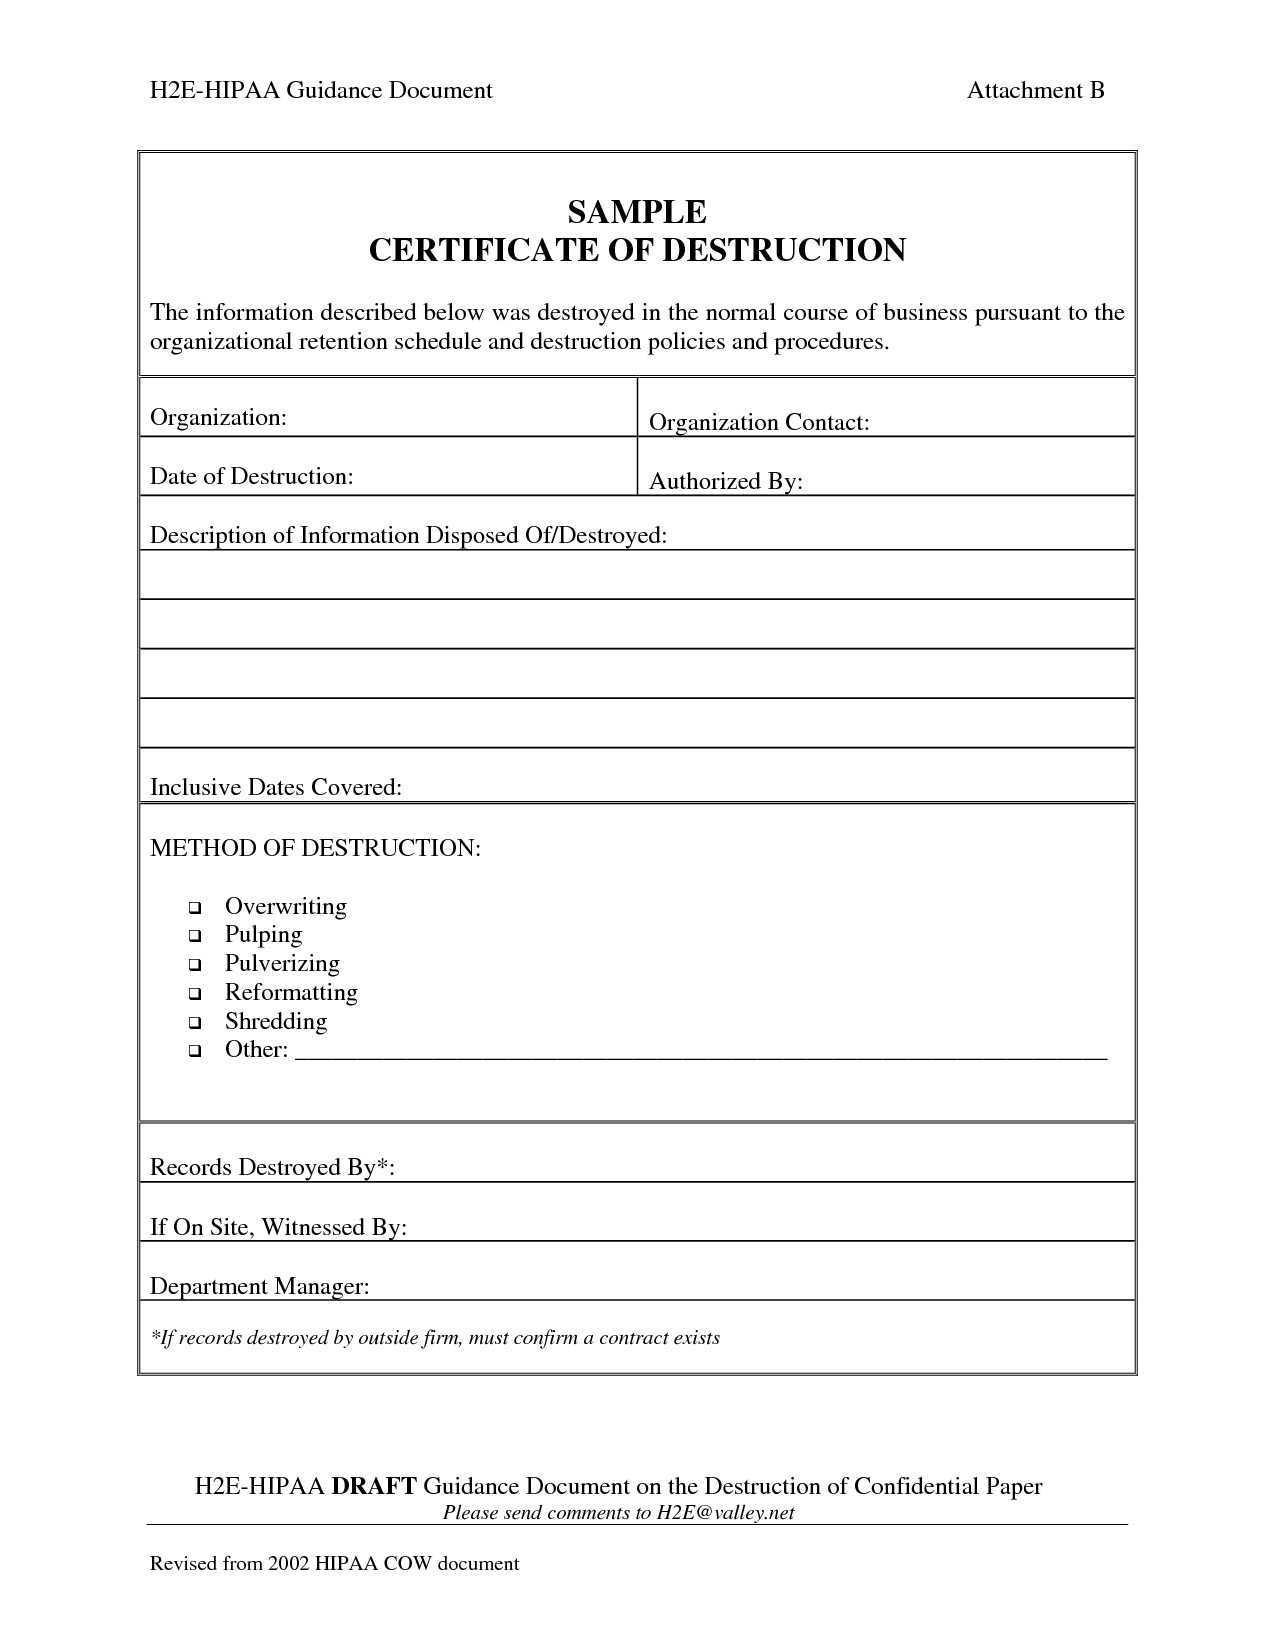 001 Template Ideas Certificate Of Destruction Frightening Throughout Free Certificate Of Destruction Template